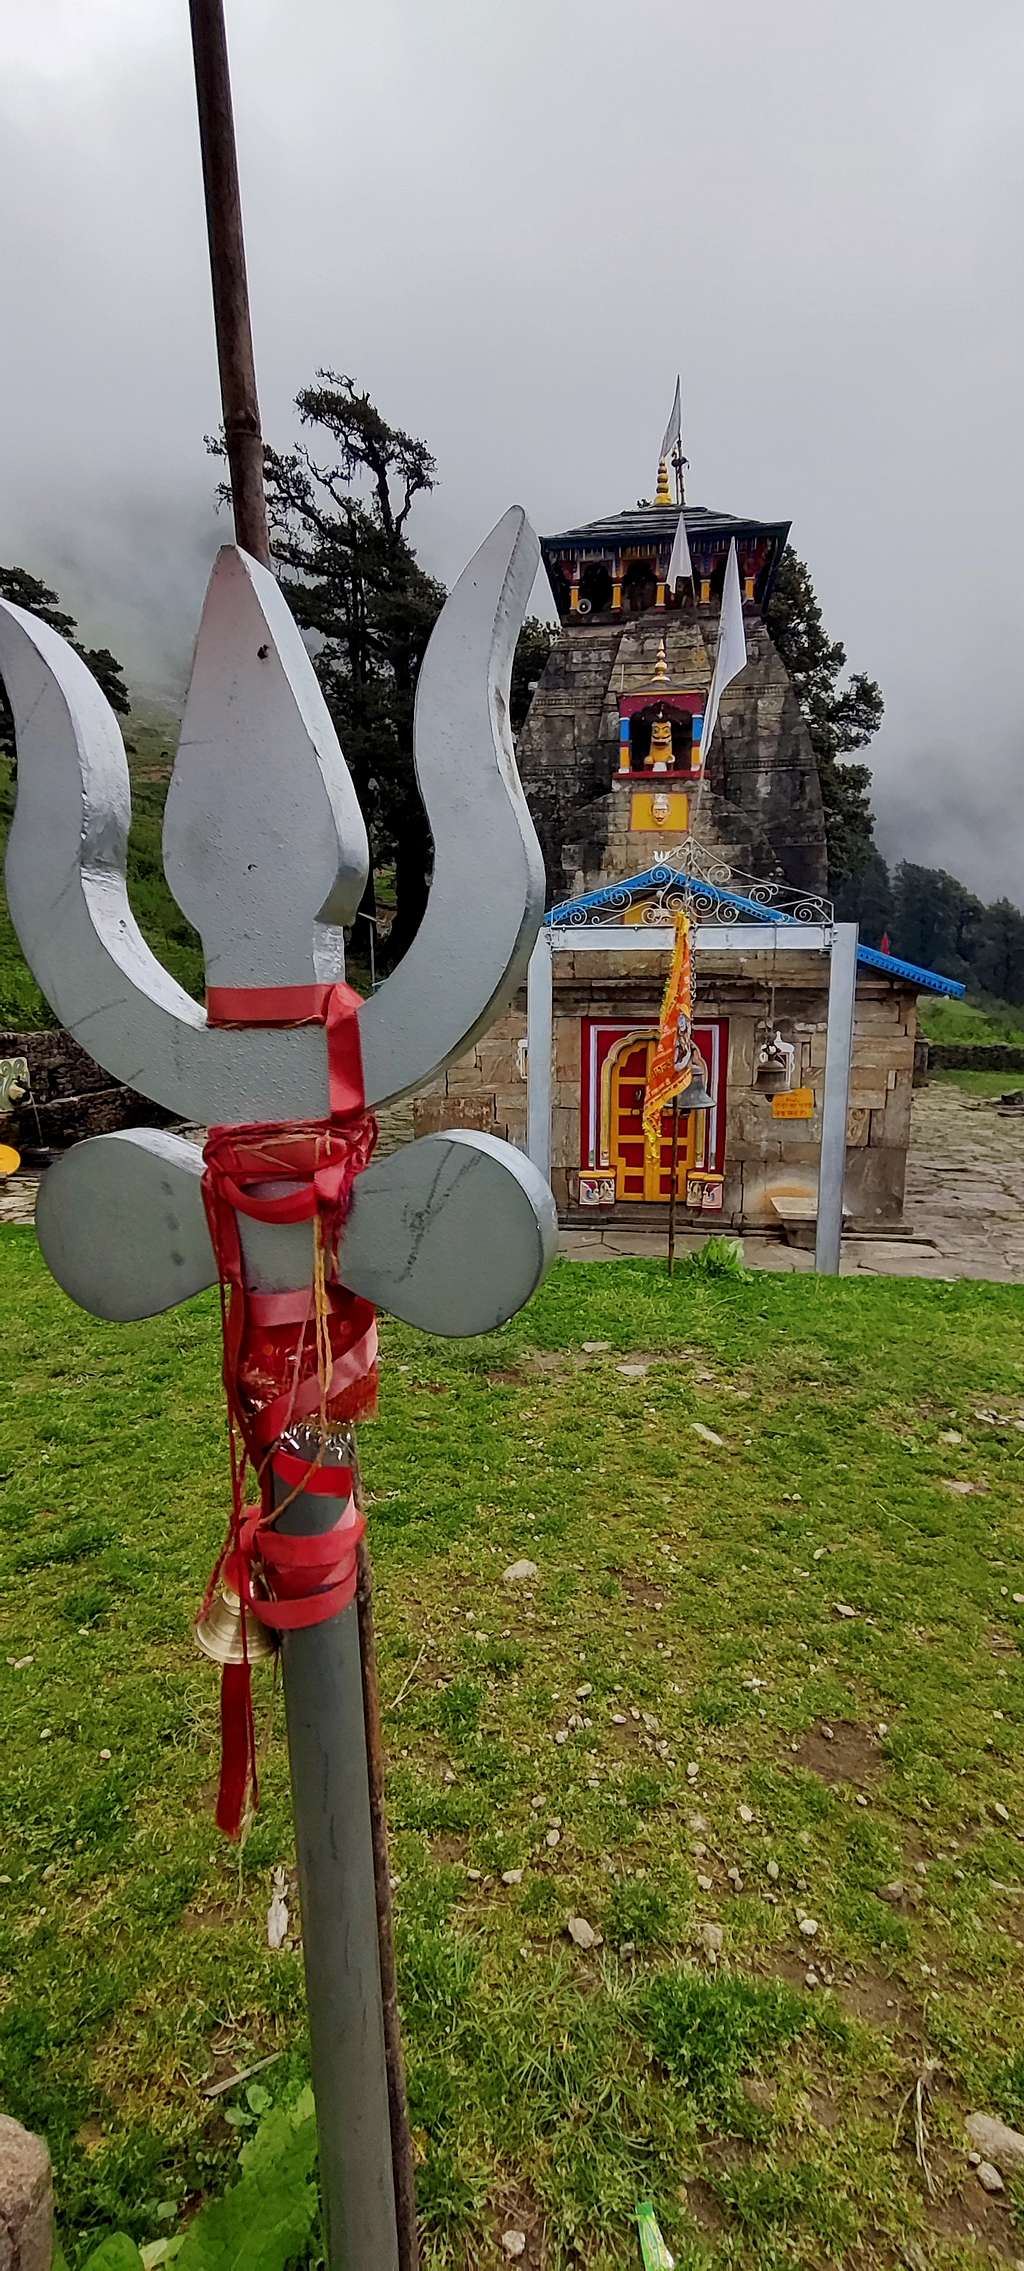 MadhyaMaheshwar Temple with Trident